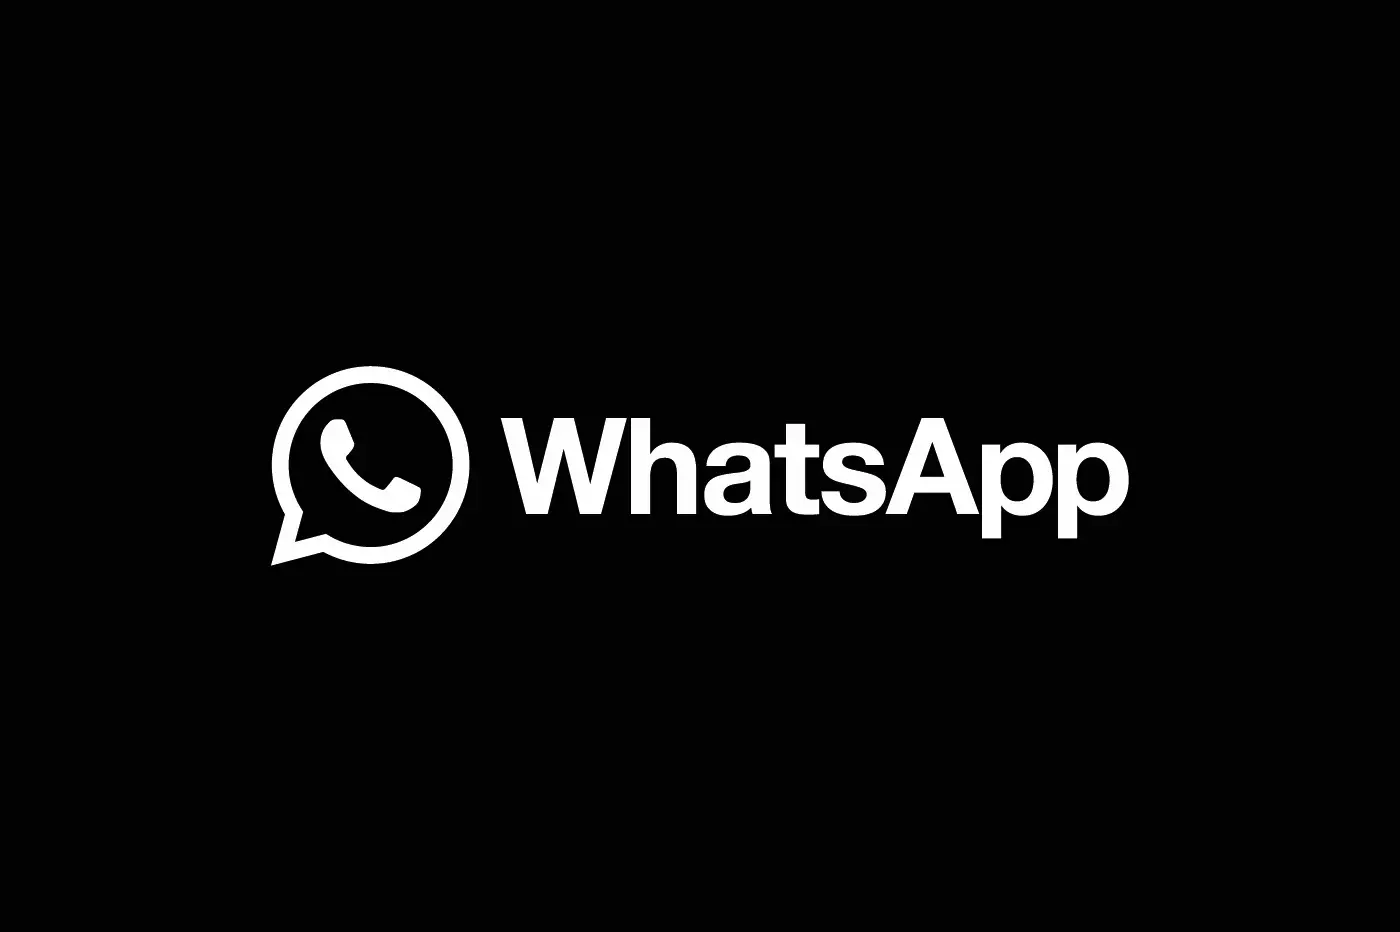 Confidentialité : WhatsApp retarde la modification des normes de service après la réaction des utilisateurs